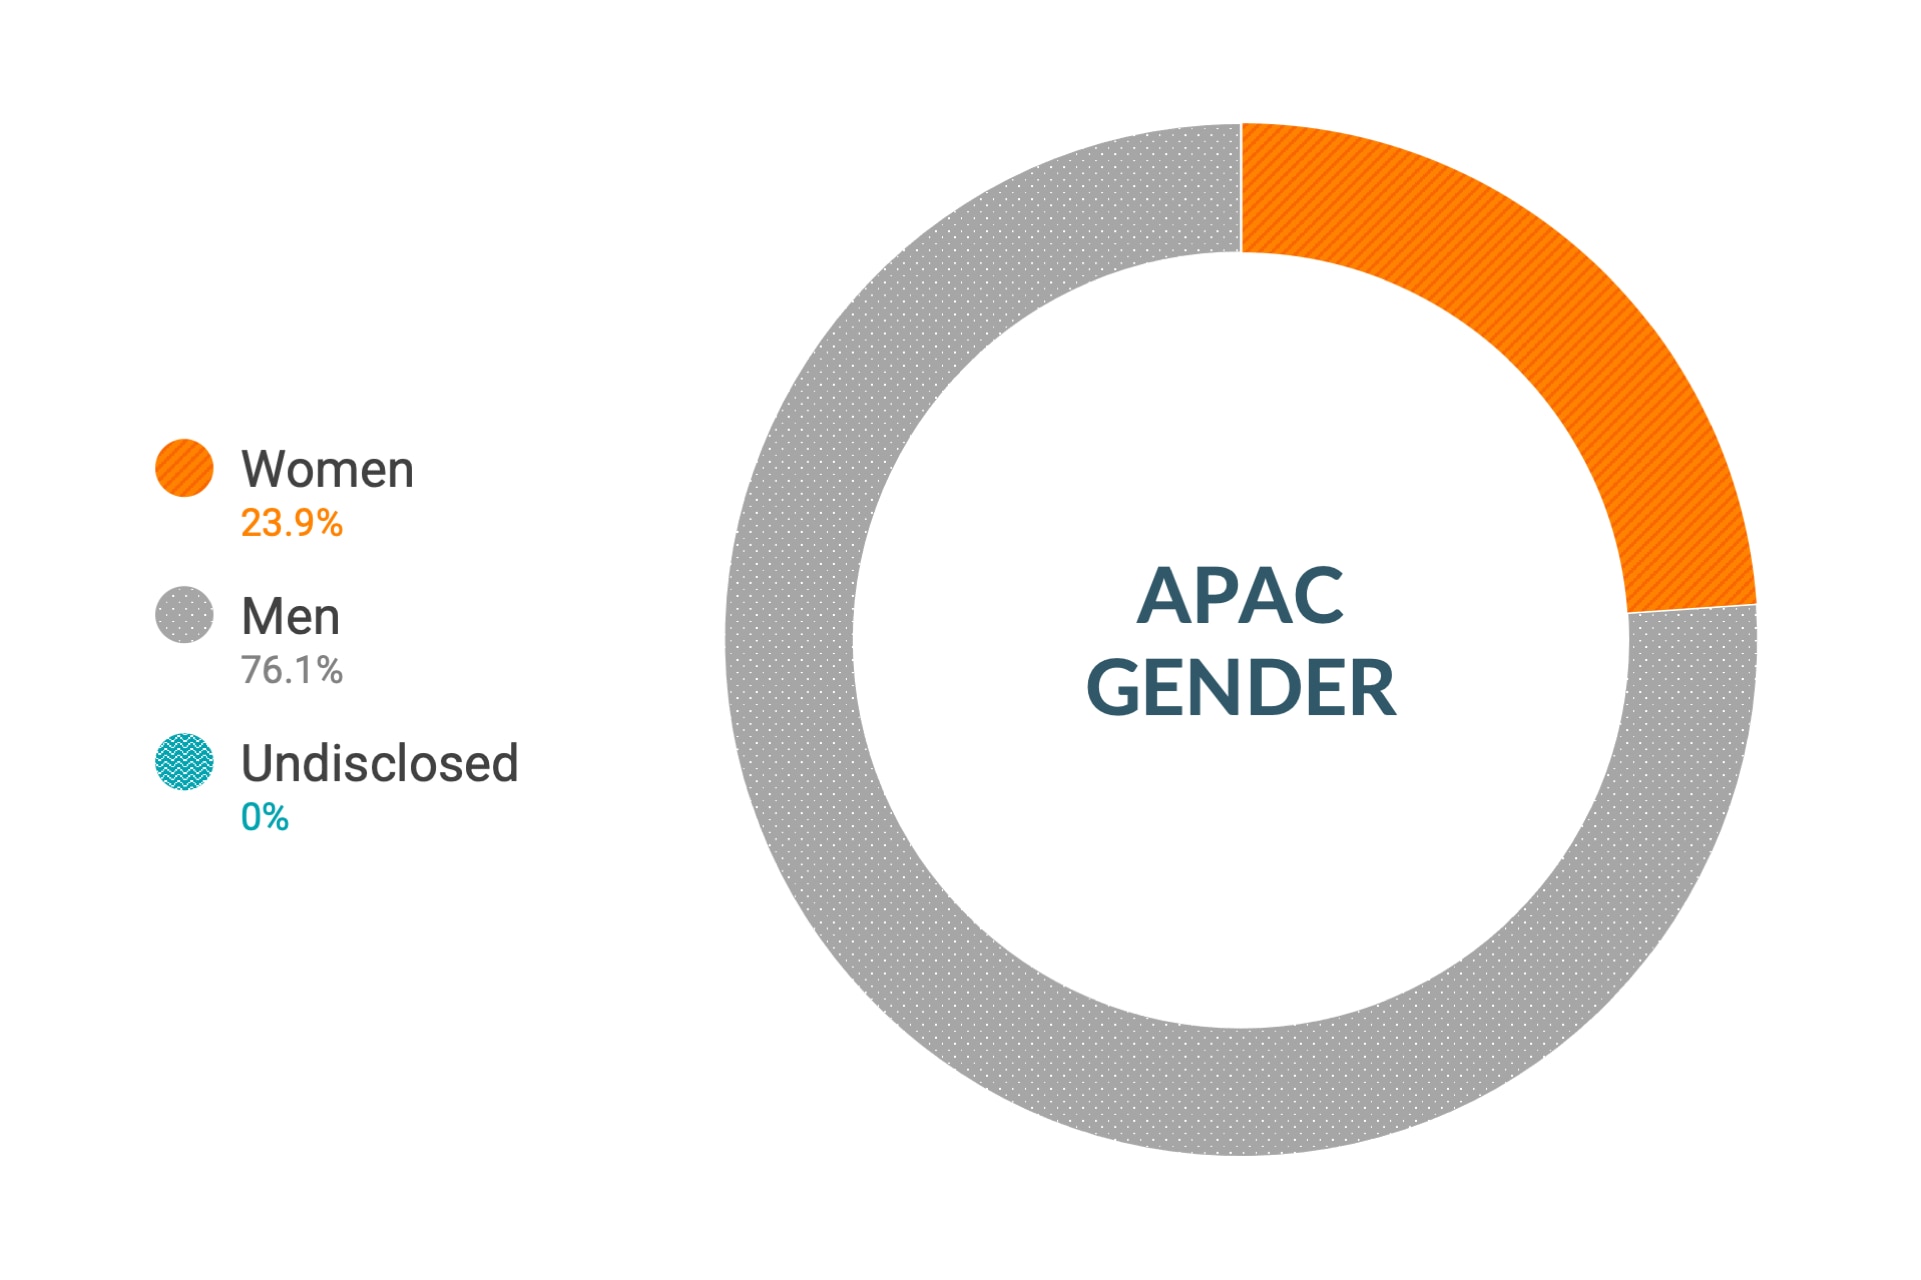 Dati Cloudera su diversità e inclusione di genere nell'Asia Pacifica: donne 26%, uomini 74%